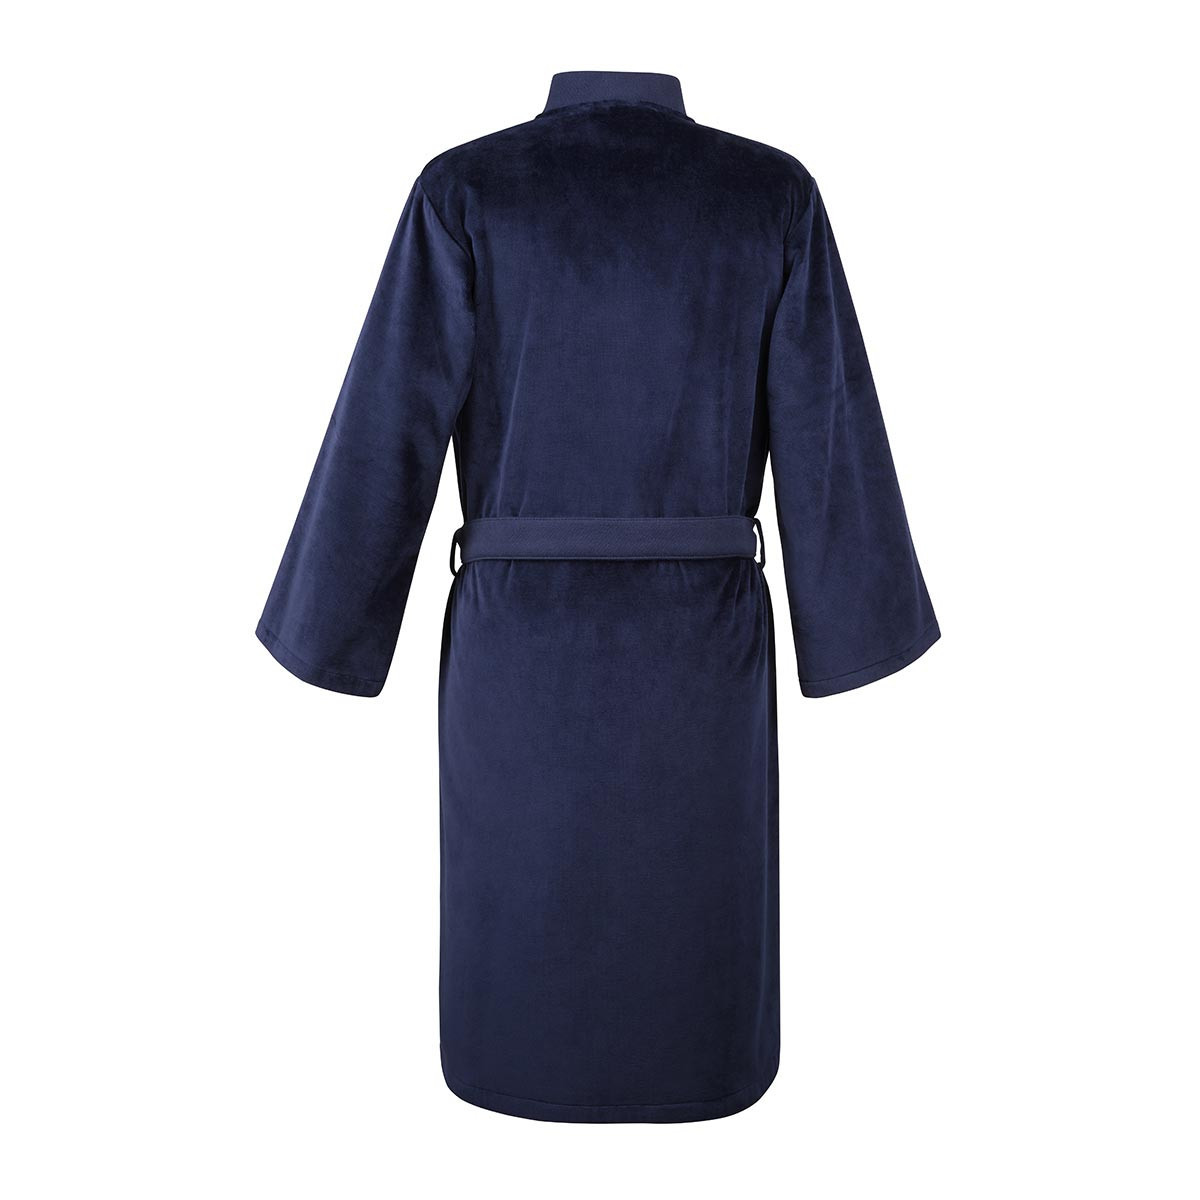 халат кимоно Ralph Lauren Teddy - купить в магазине Yves Delorme Russia